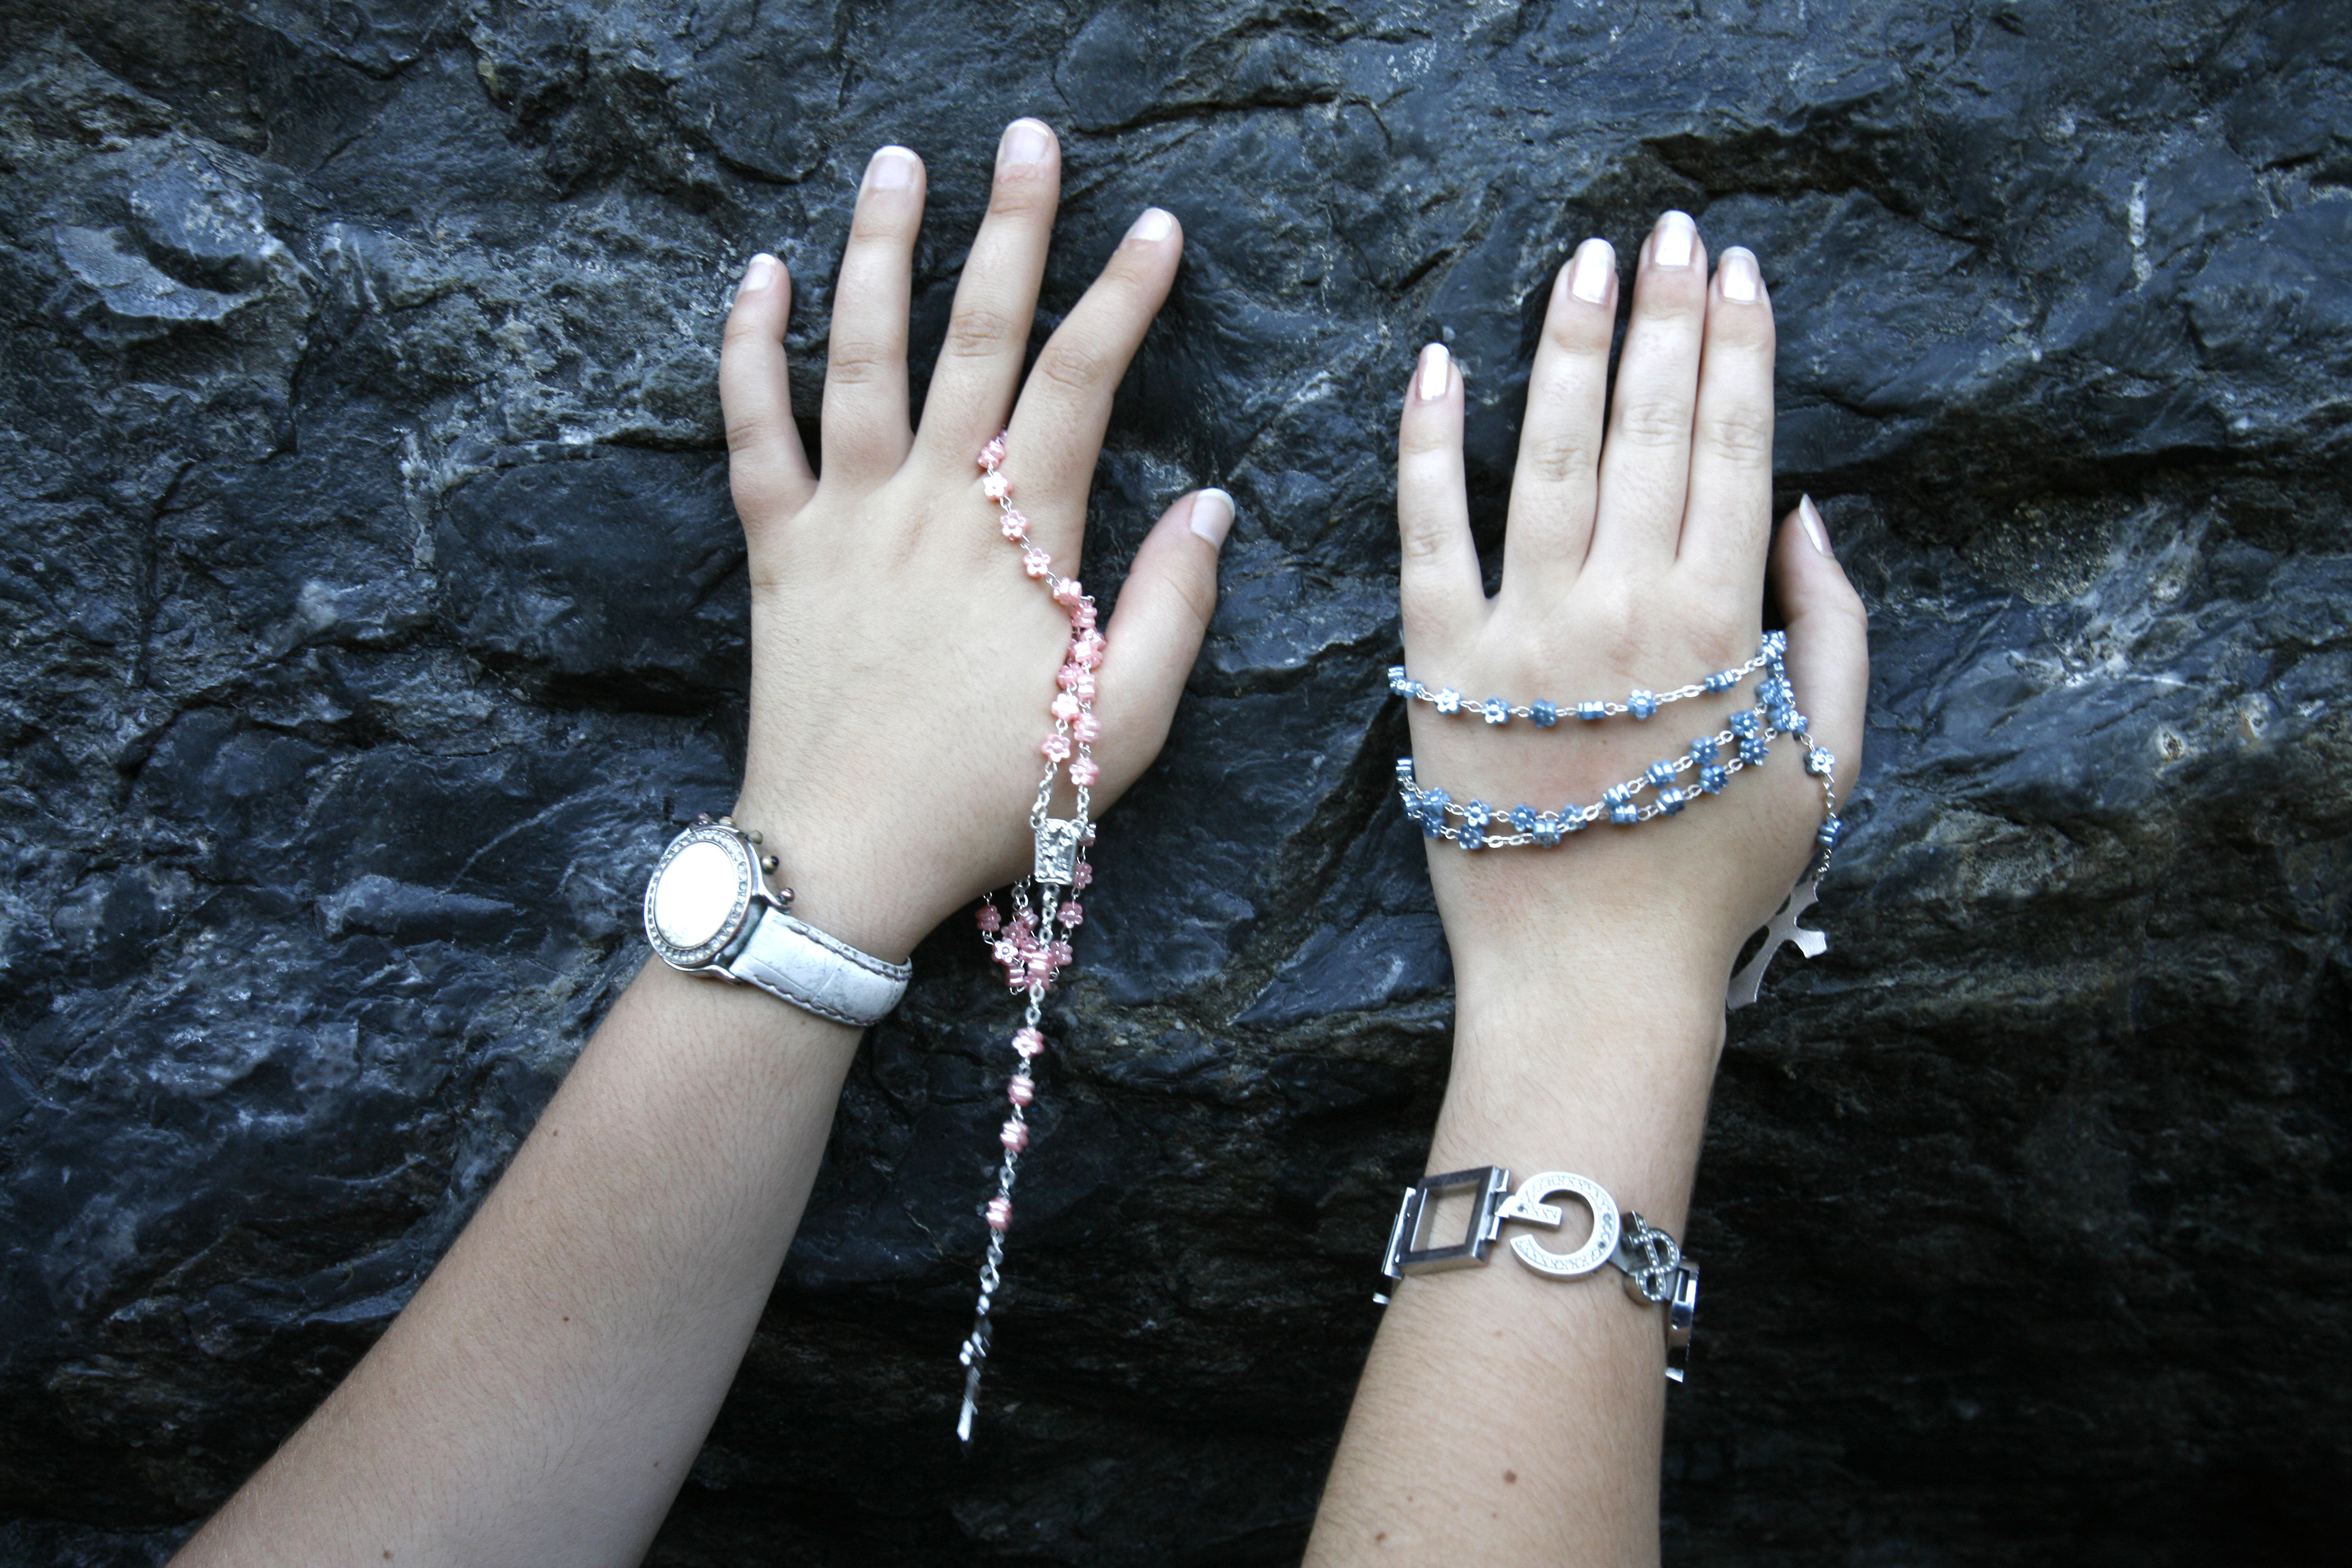 Mains sur la pierre de Lourdes